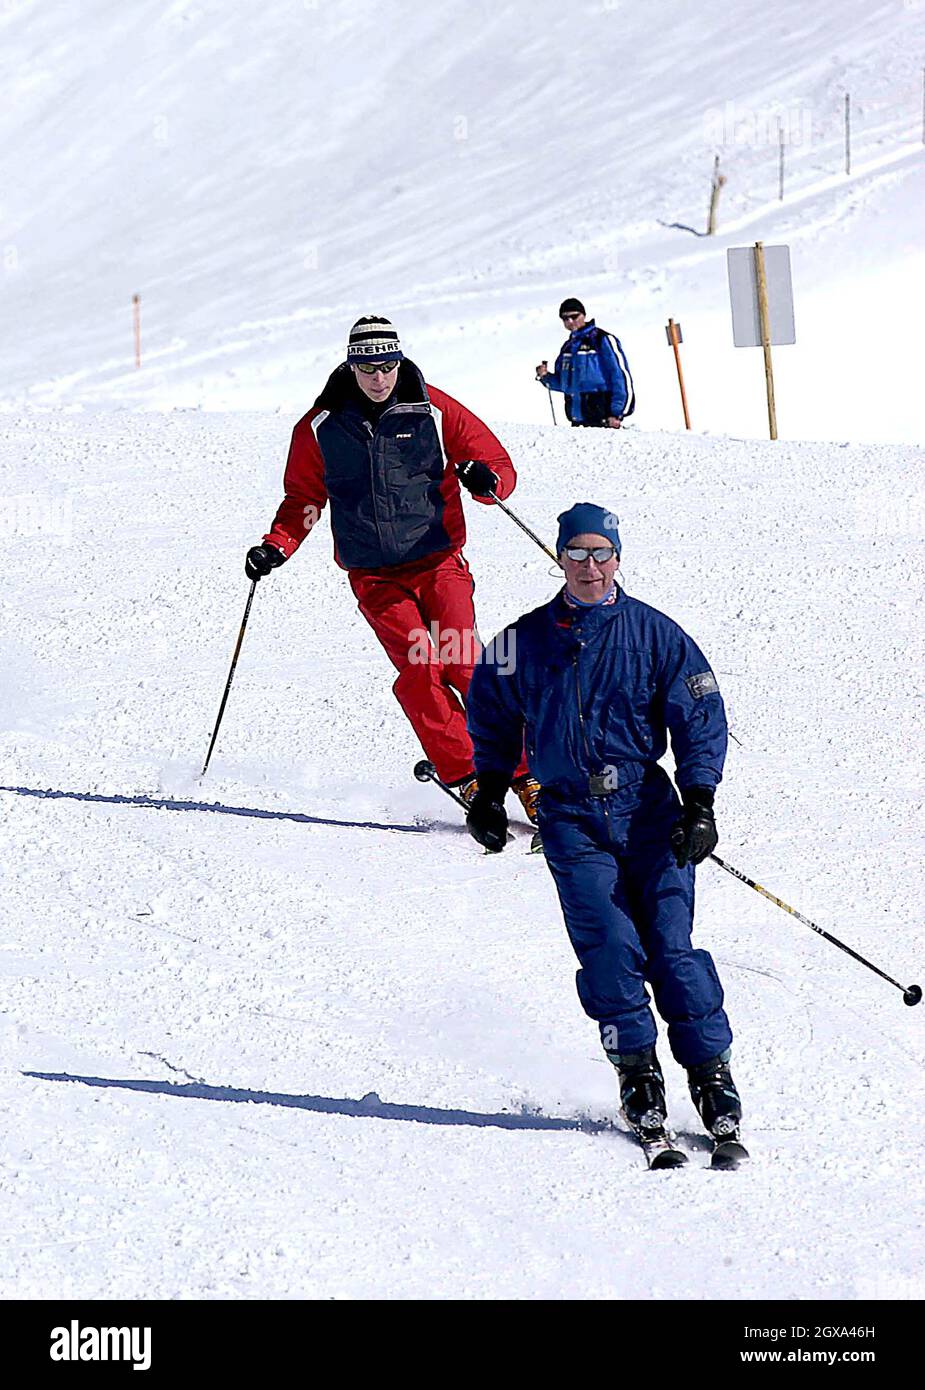 Le Prince Charles et son fils, le Prince William, appréciant leur voyage de ski ensemble.Le prince William plaisantait avec les membres de la presse à la façon dont son père est un skieur supérieur, mais qu'il rattrapa. Banque D'Images